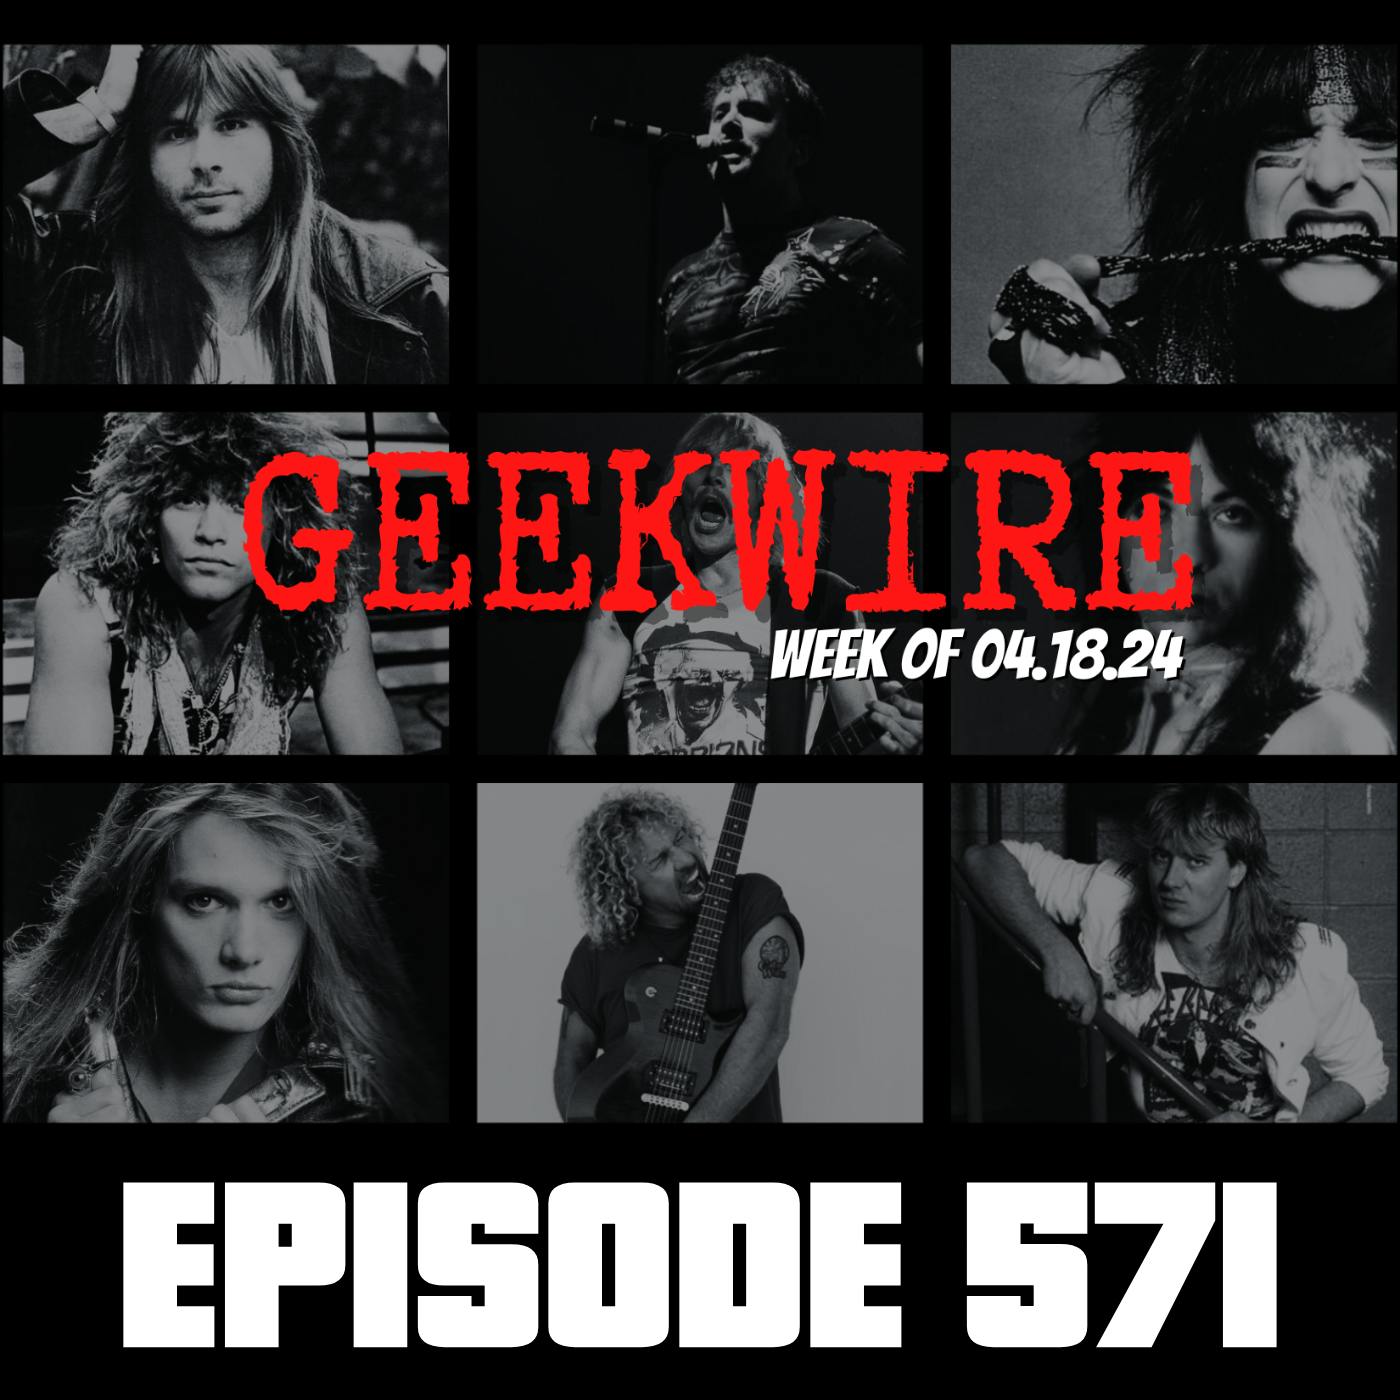 Geekwire - Week of 04.18.24 - Ep571